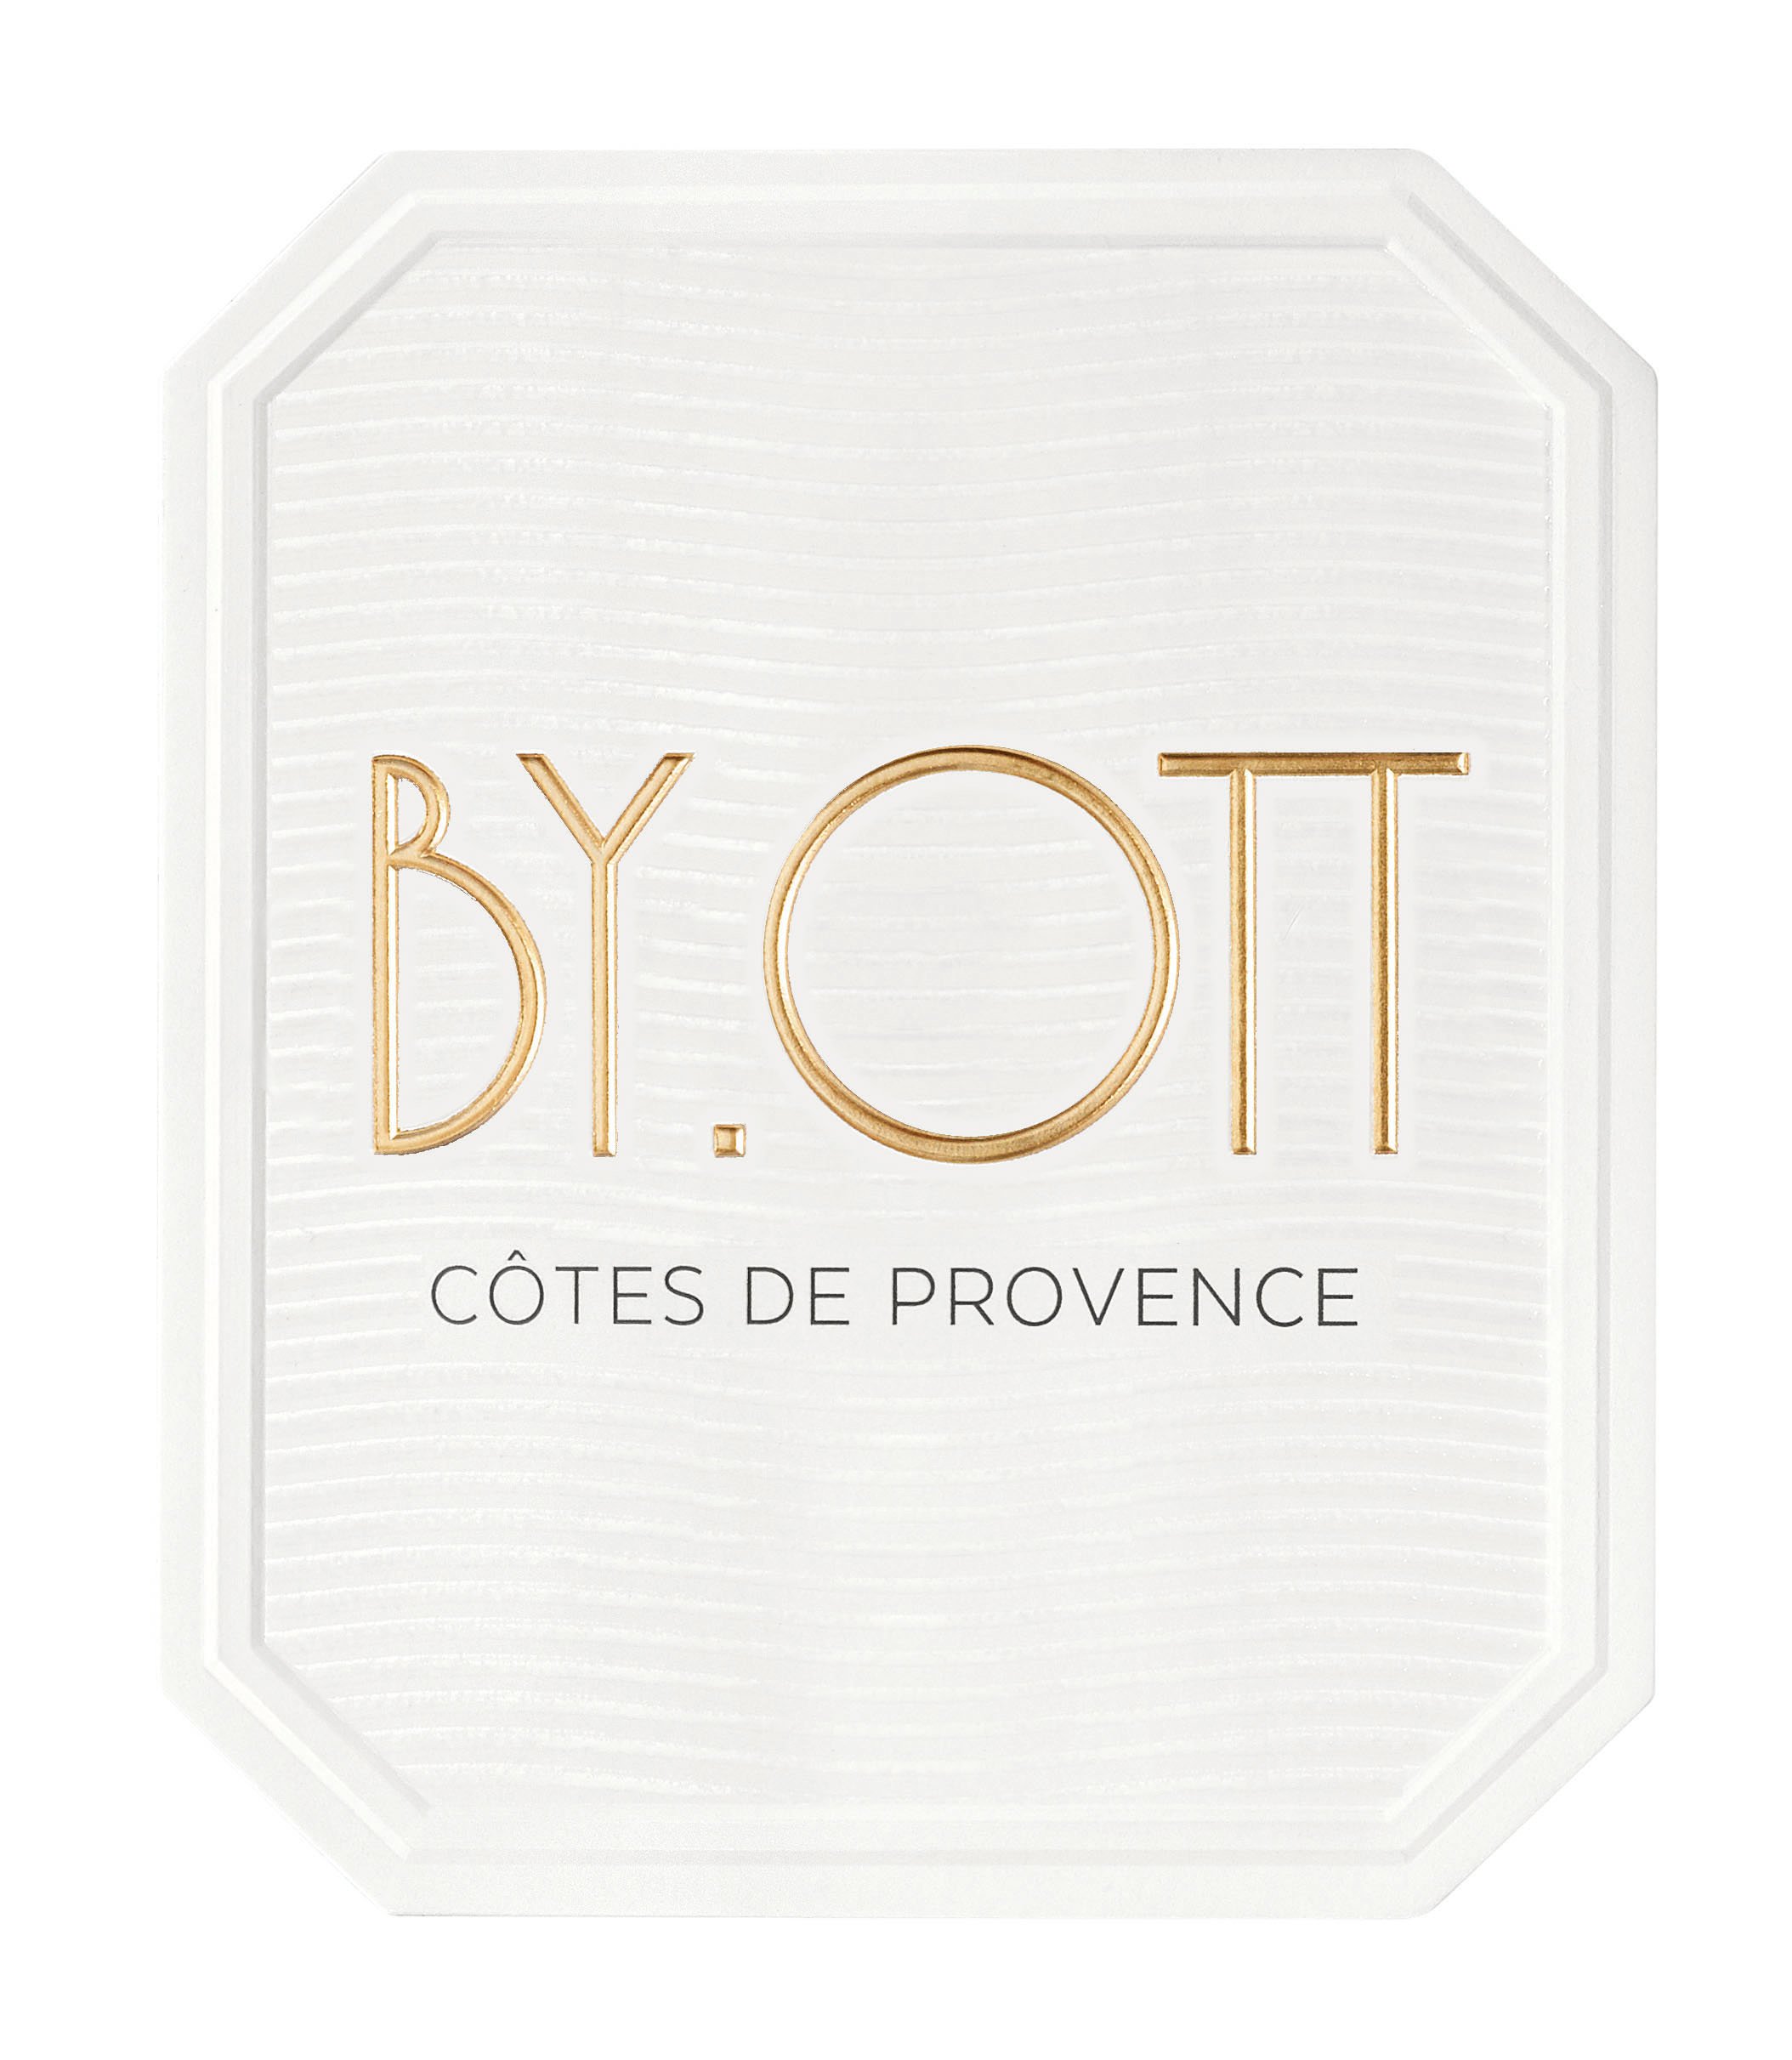 By Ott Cotes de Provence Rose 2021